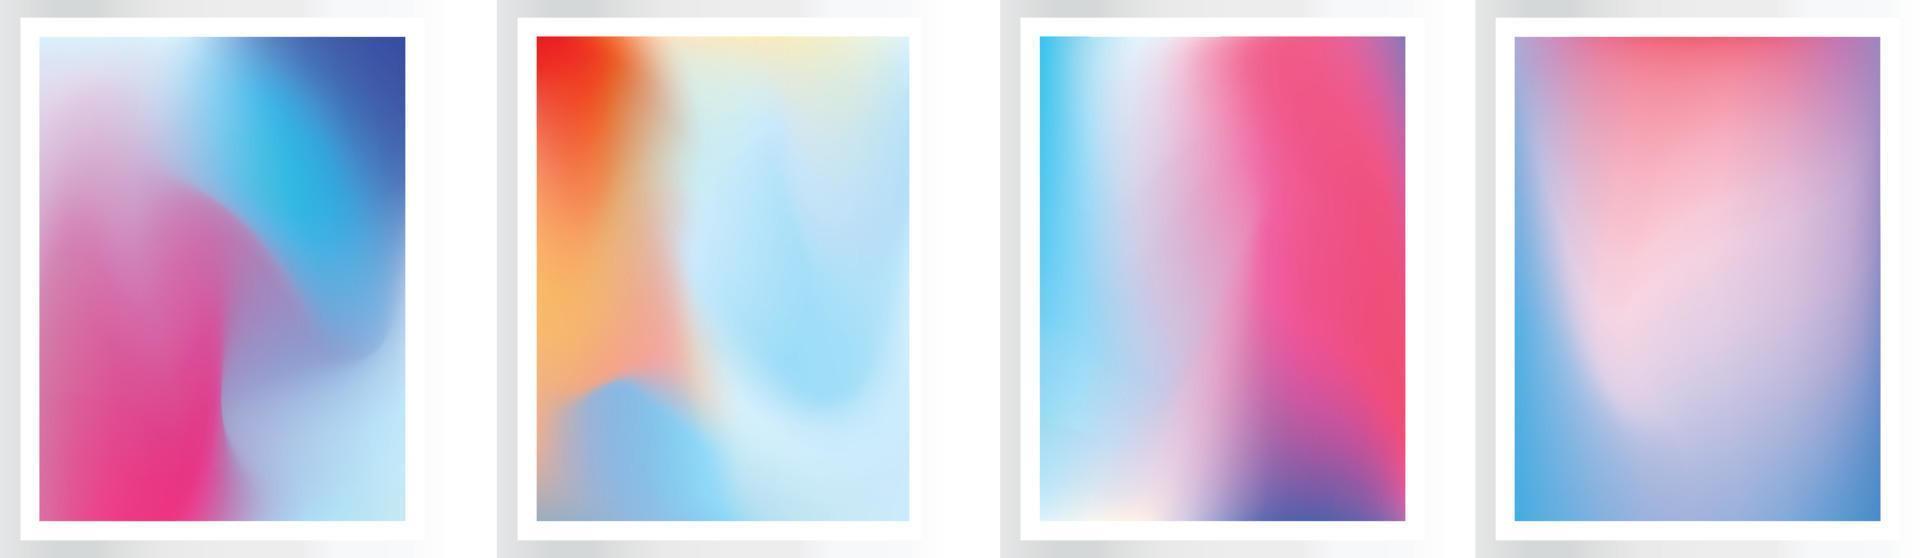 conjunto de 4 4 universal gradientes antecedentes con suave transiciones en azul púrpura colores. para cubiertas, fondos de pantalla, marca, social medios de comunicación plantillas, eps archivo vector